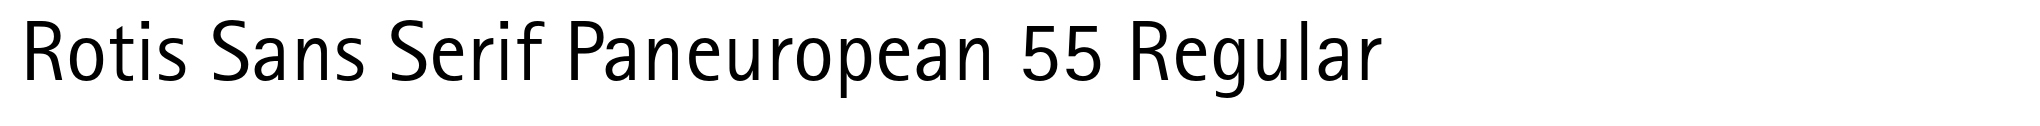 Rotis Sans Serif Paneuropean 55 Regular image